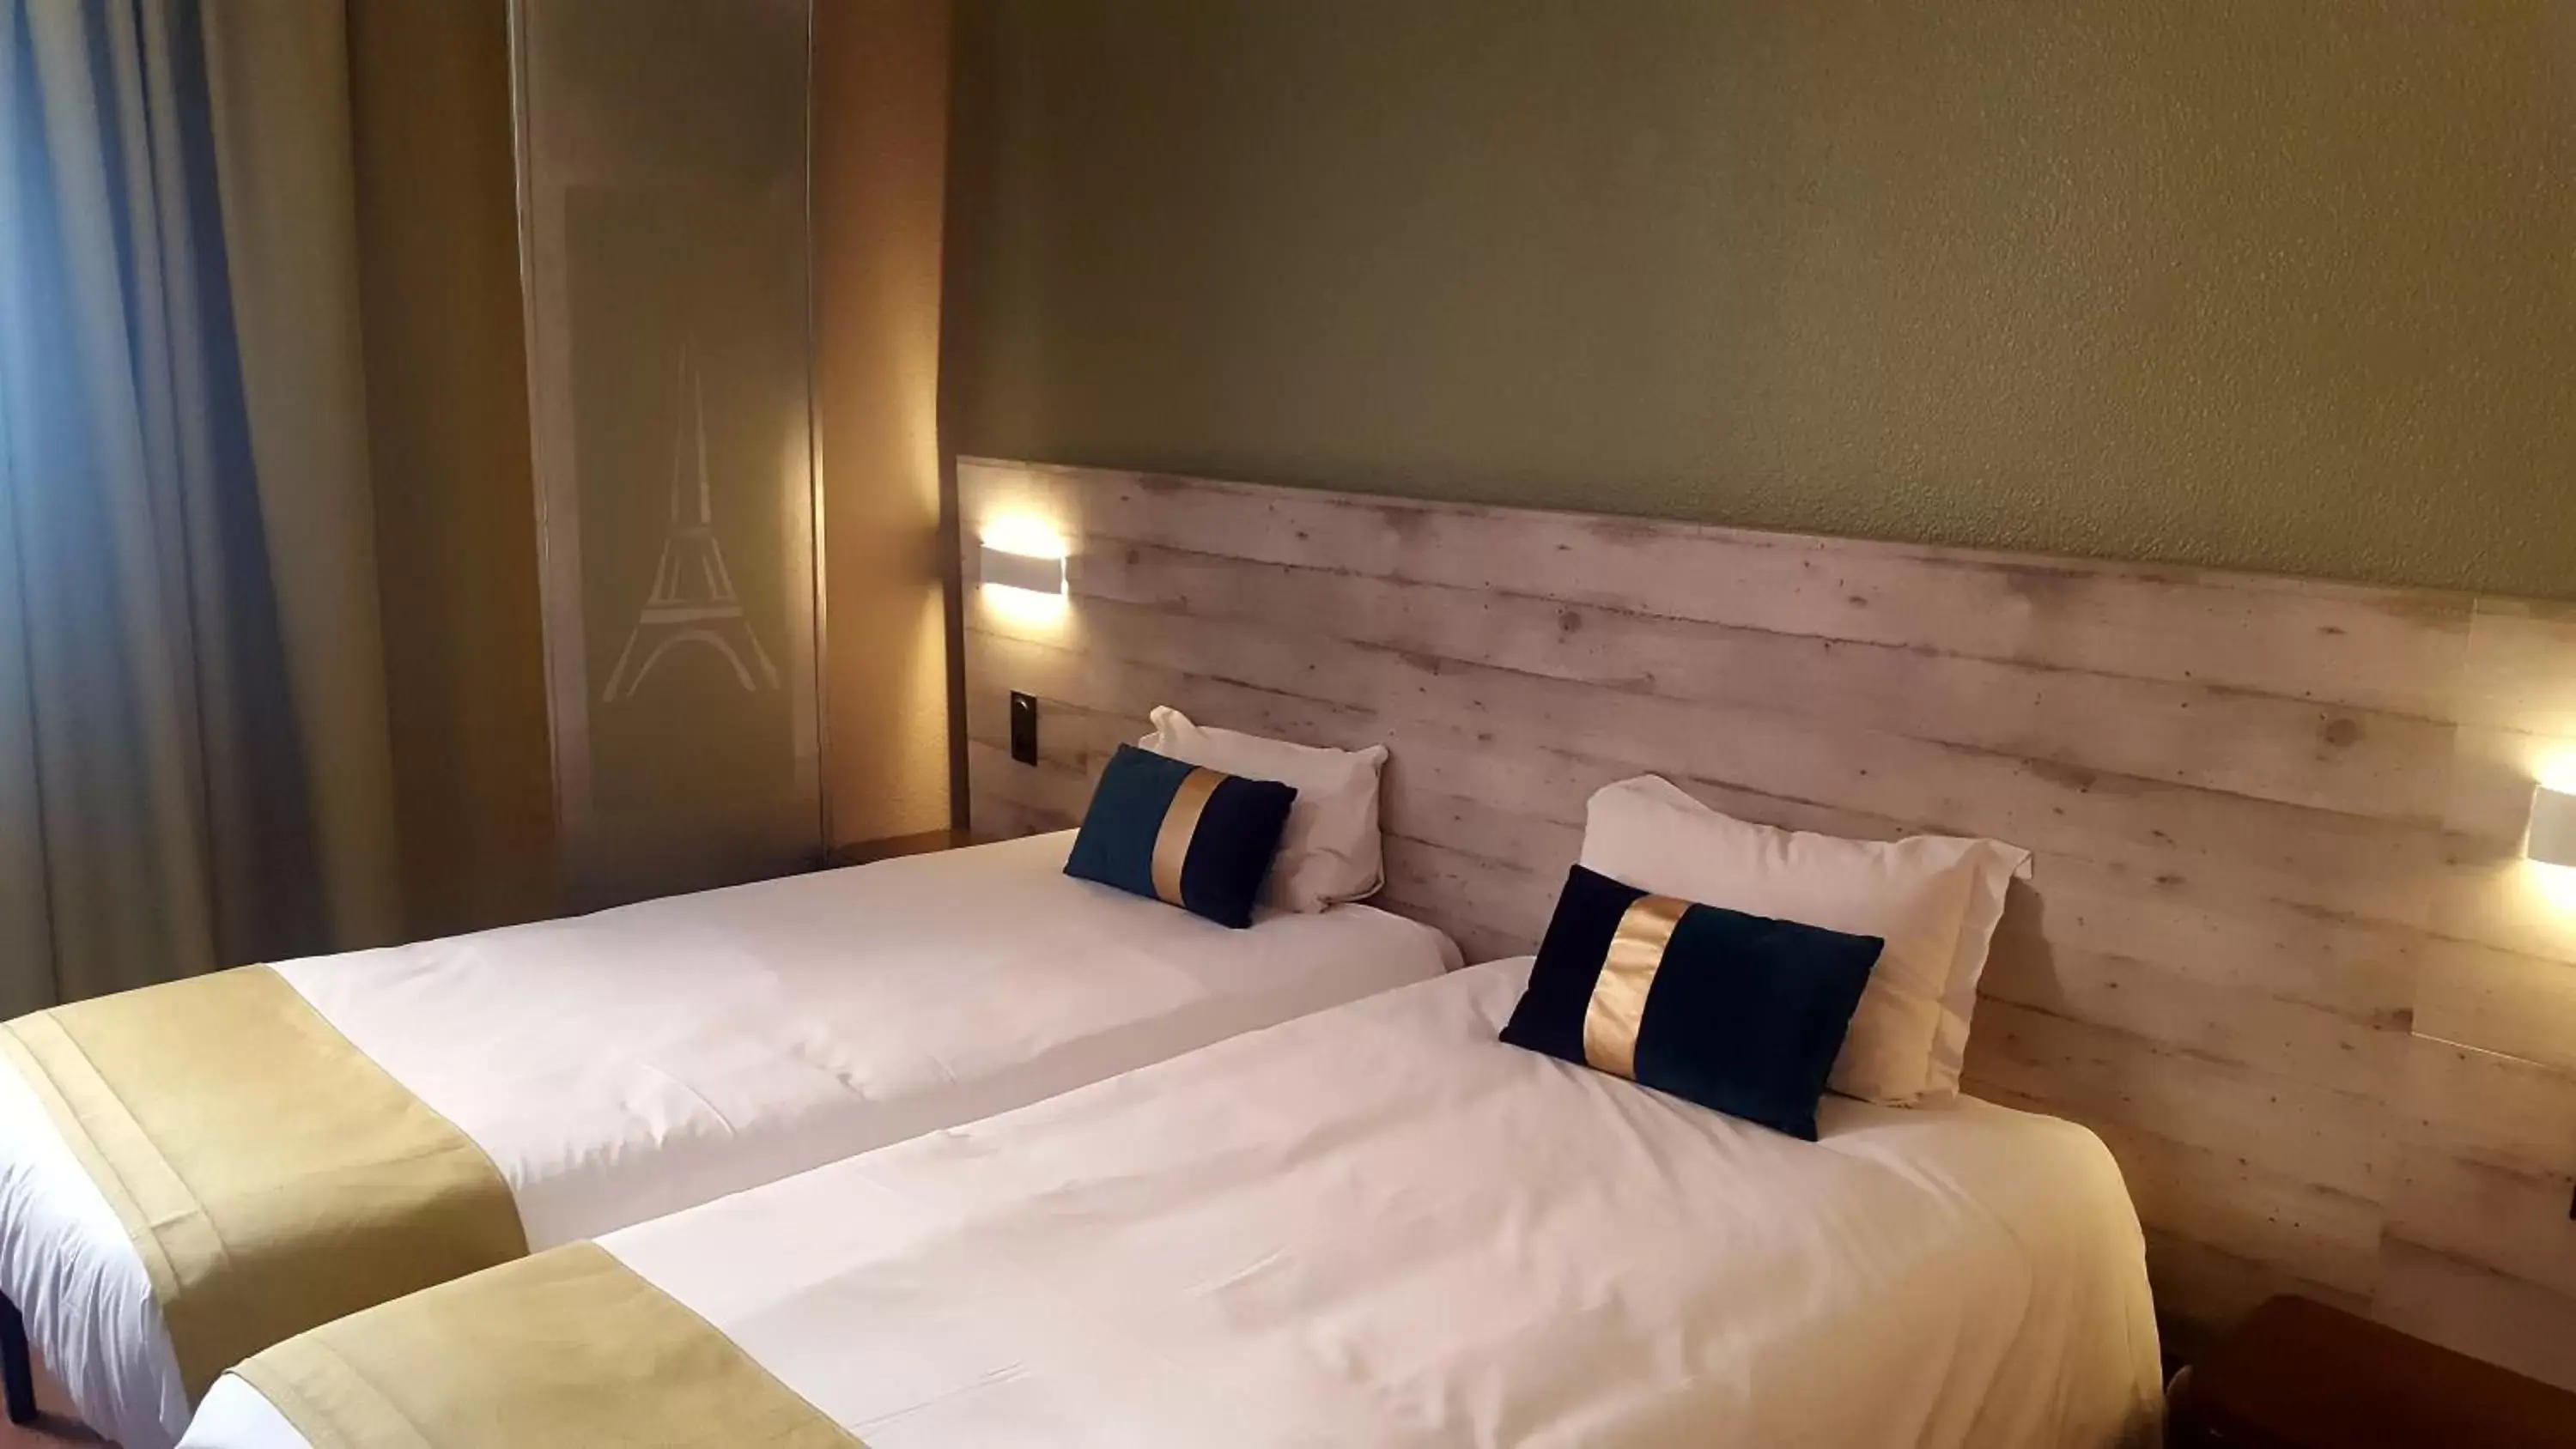 Bed in Euro Hôtel Paris Créteil